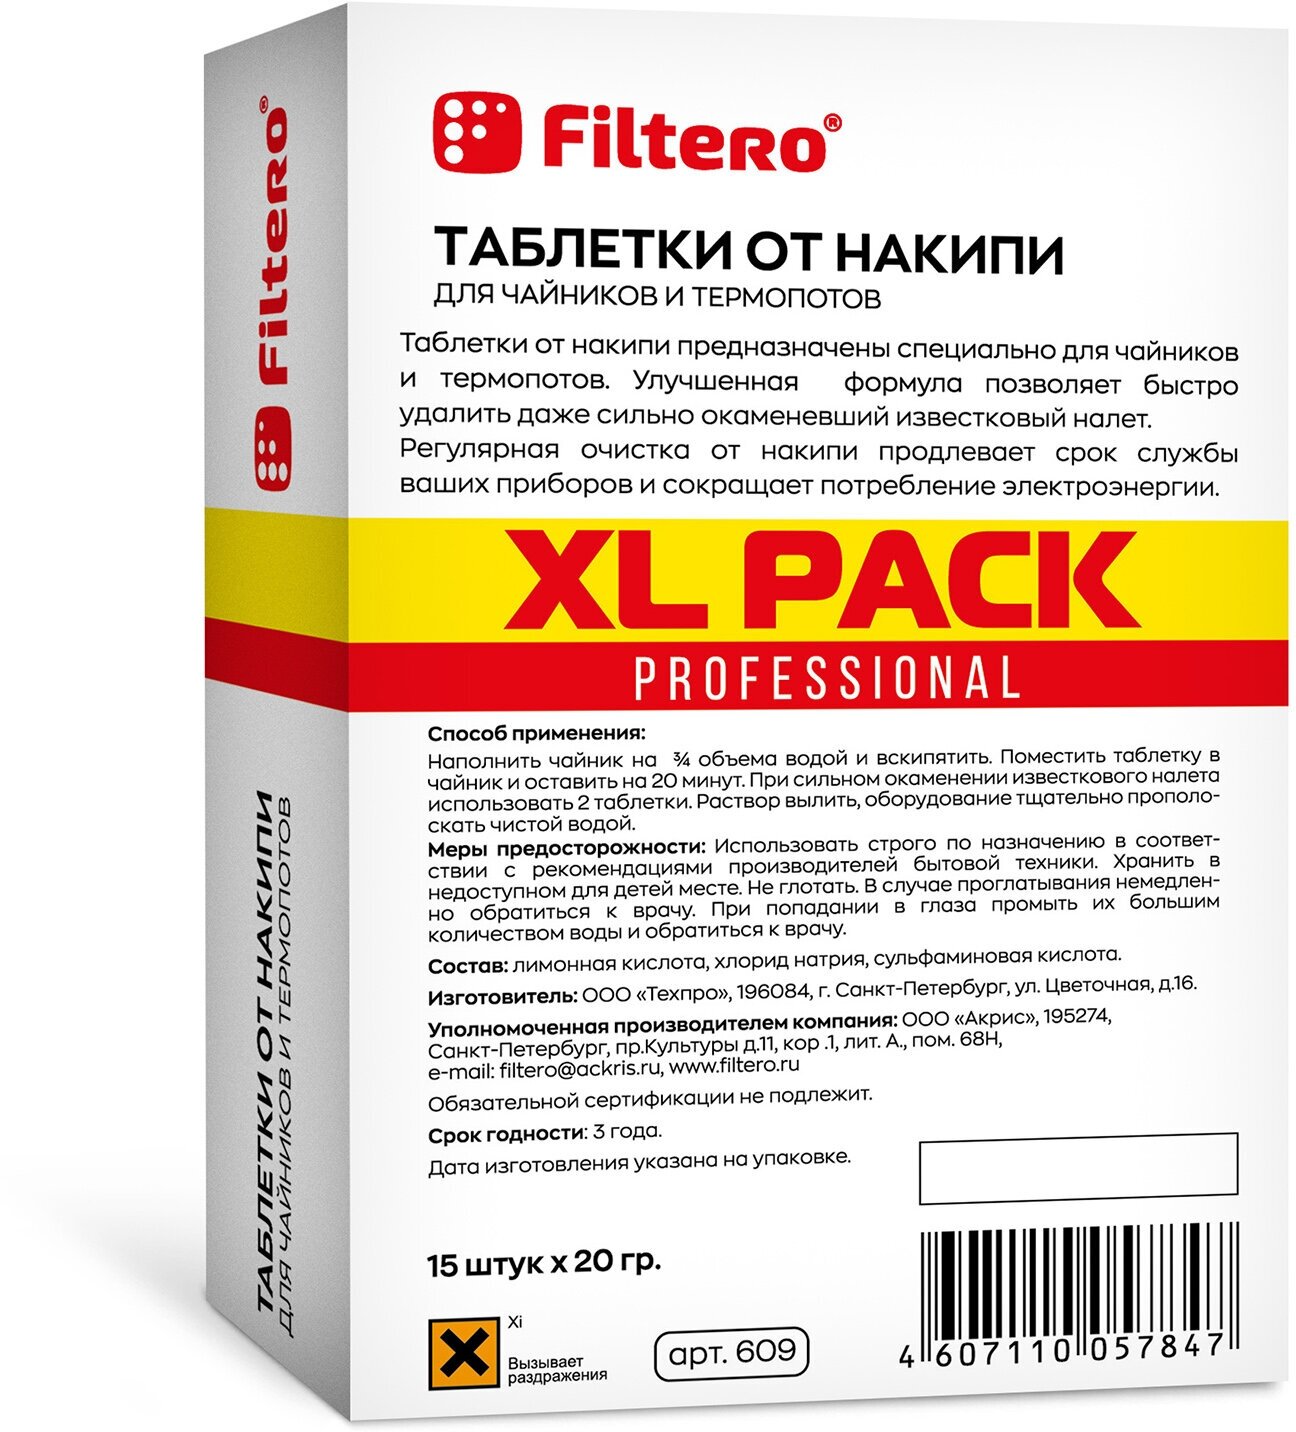 Filtero Комплект XL Pack Таблеток от накипи для чайников и термопотов, 30 штук, Арт.629